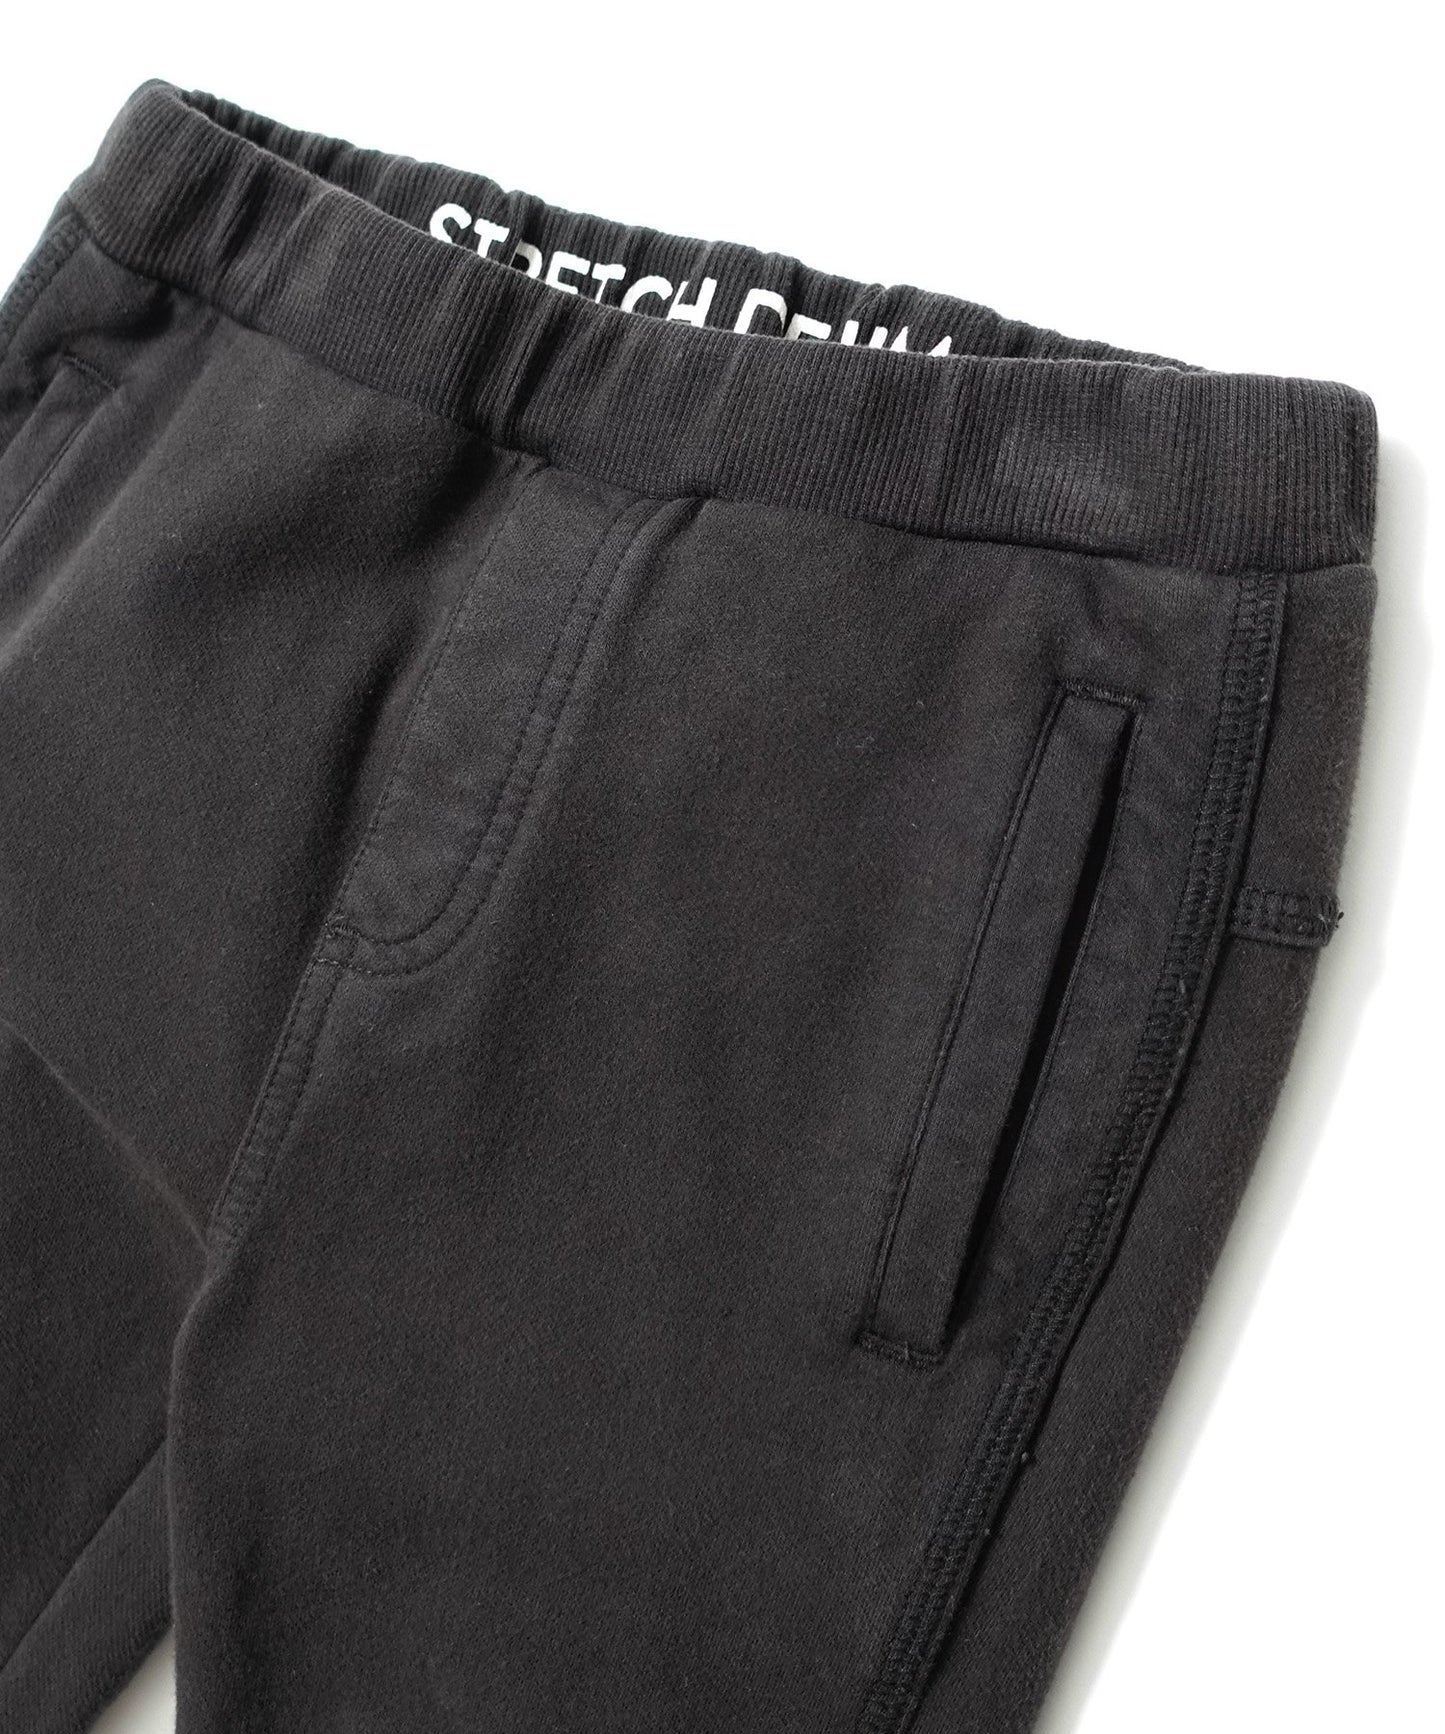 柔軟平紋針織褲 彈性極佳/適合安裝 [145-175cm]